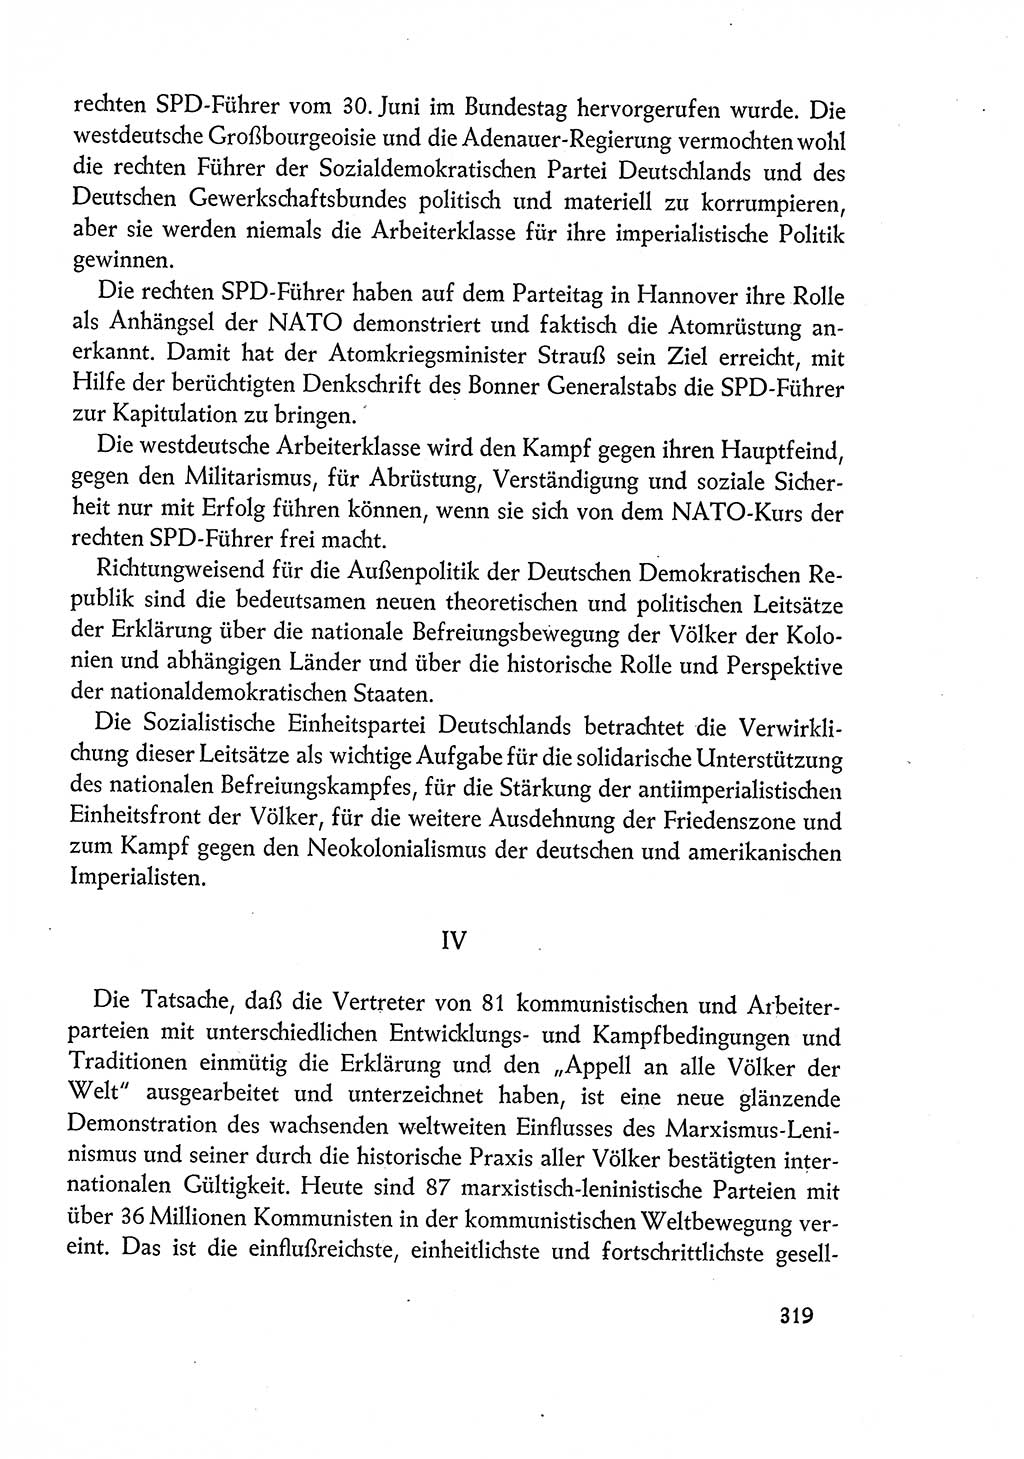 Dokumente der Sozialistischen Einheitspartei Deutschlands (SED) [Deutsche Demokratische Republik (DDR)] 1960-1961, Seite 319 (Dok. SED DDR 1960-1961, S. 319)